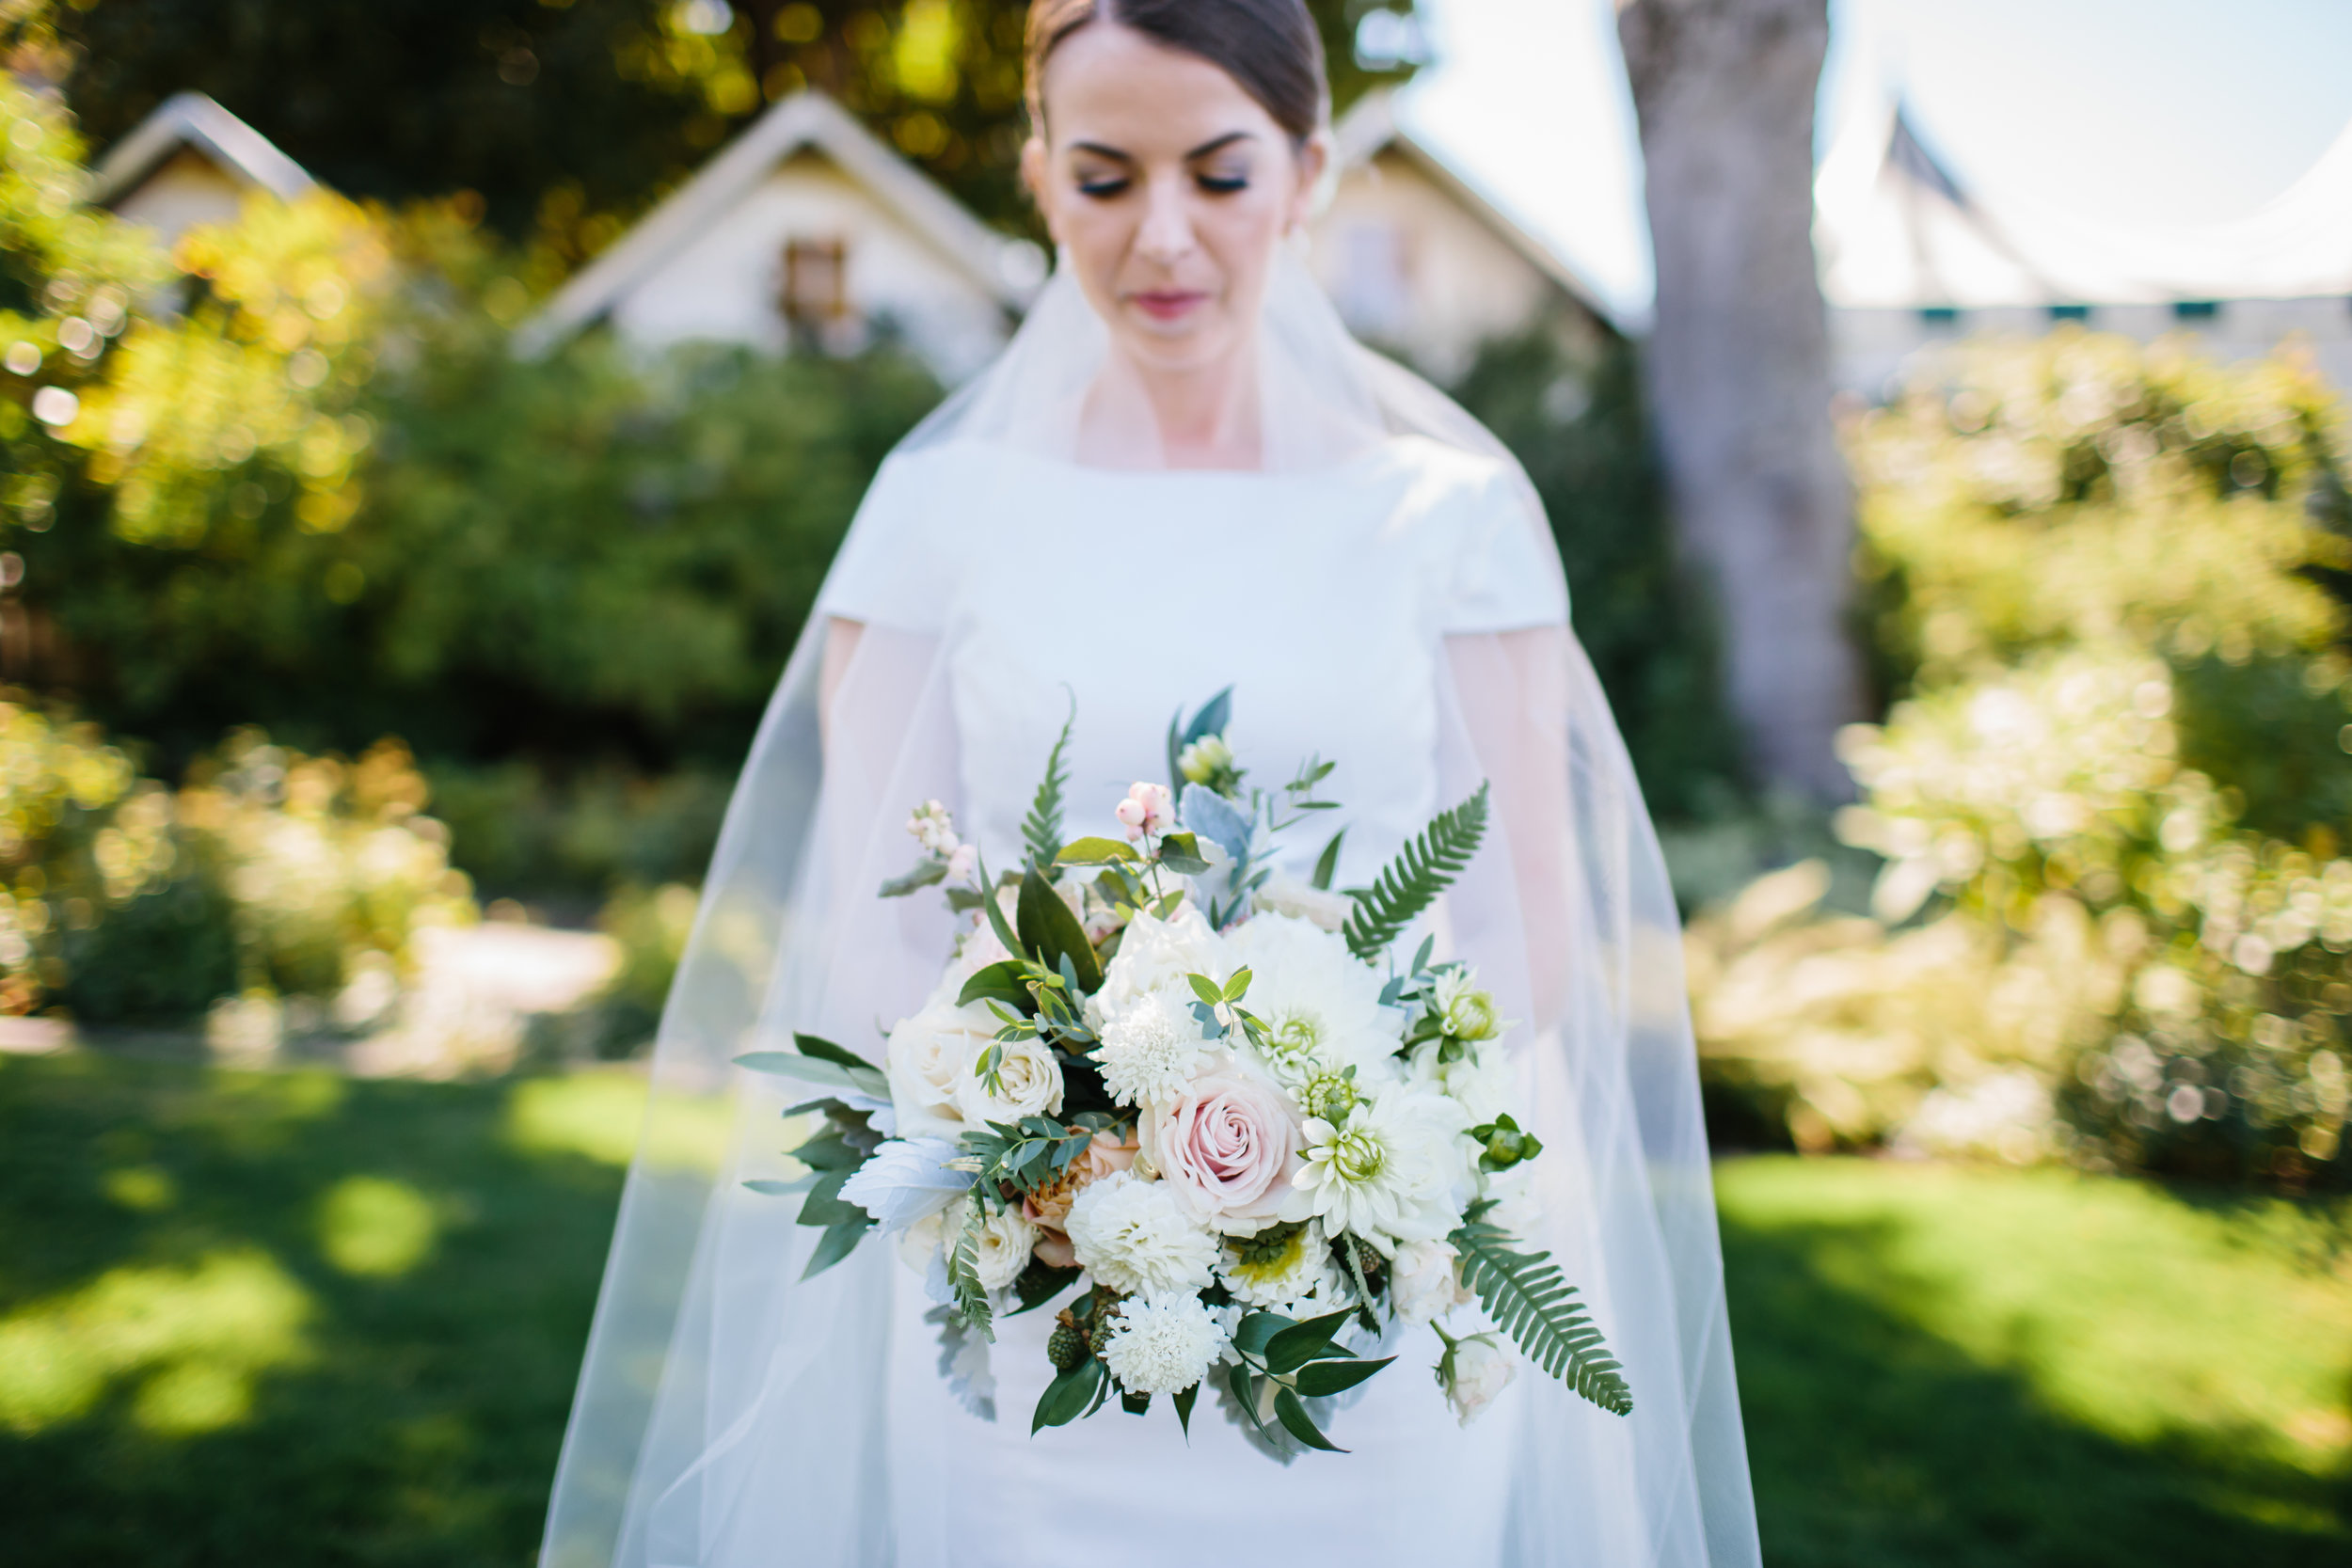 Blush and White Wedding Bouquet.jpg